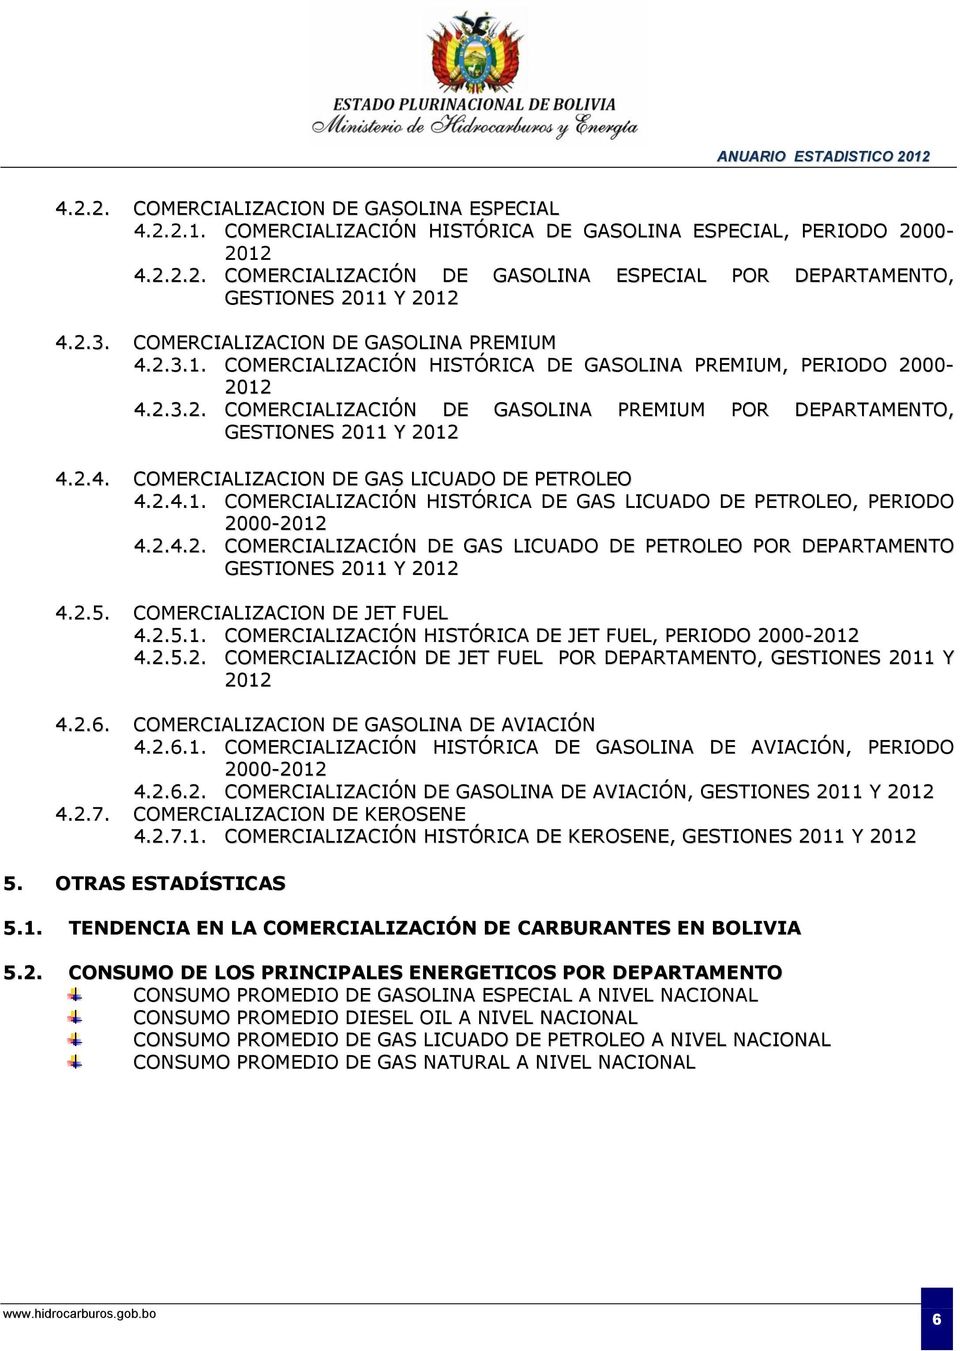 2.4. COMERCIALIZACION DE GAS LICUADO DE PETROLEO 4.2.4.1. COMERCIALIZACIÓN HISTÓRICA DE GAS LICUADO DE PETROLEO, PERIODO 2-212 4.2.4.2. COMERCIALIZACIÓN DE GAS LICUADO DE PETROLEO POR DEPARTAMENTO GESTIONES 211 Y 212 4.